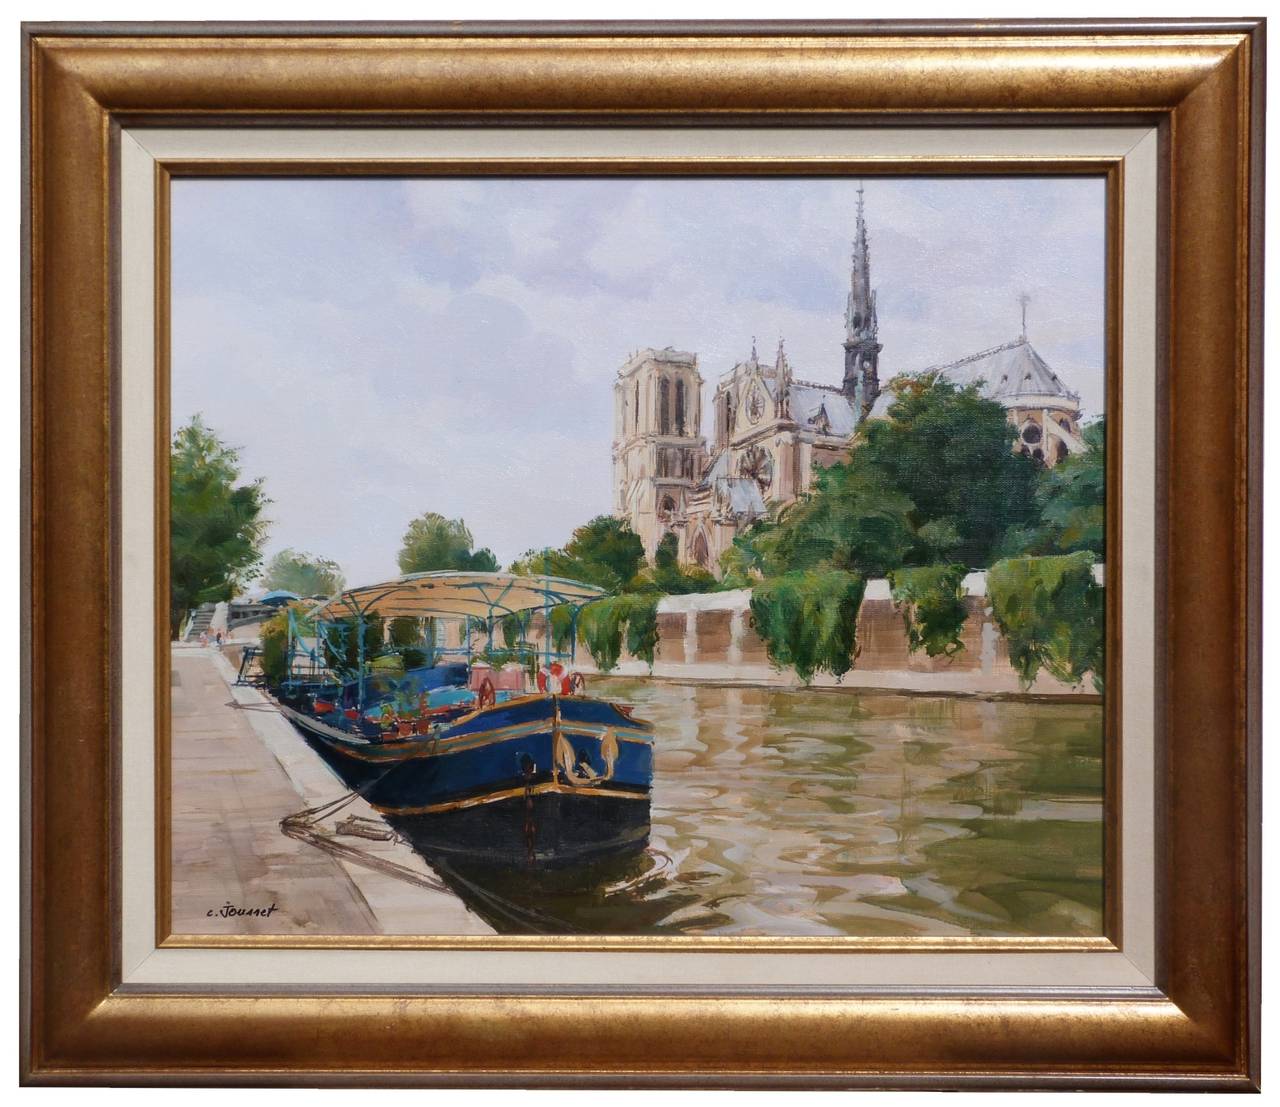 Claude JOUSSET Landscape Painting - The blue boat and Notre-Dame de Paris